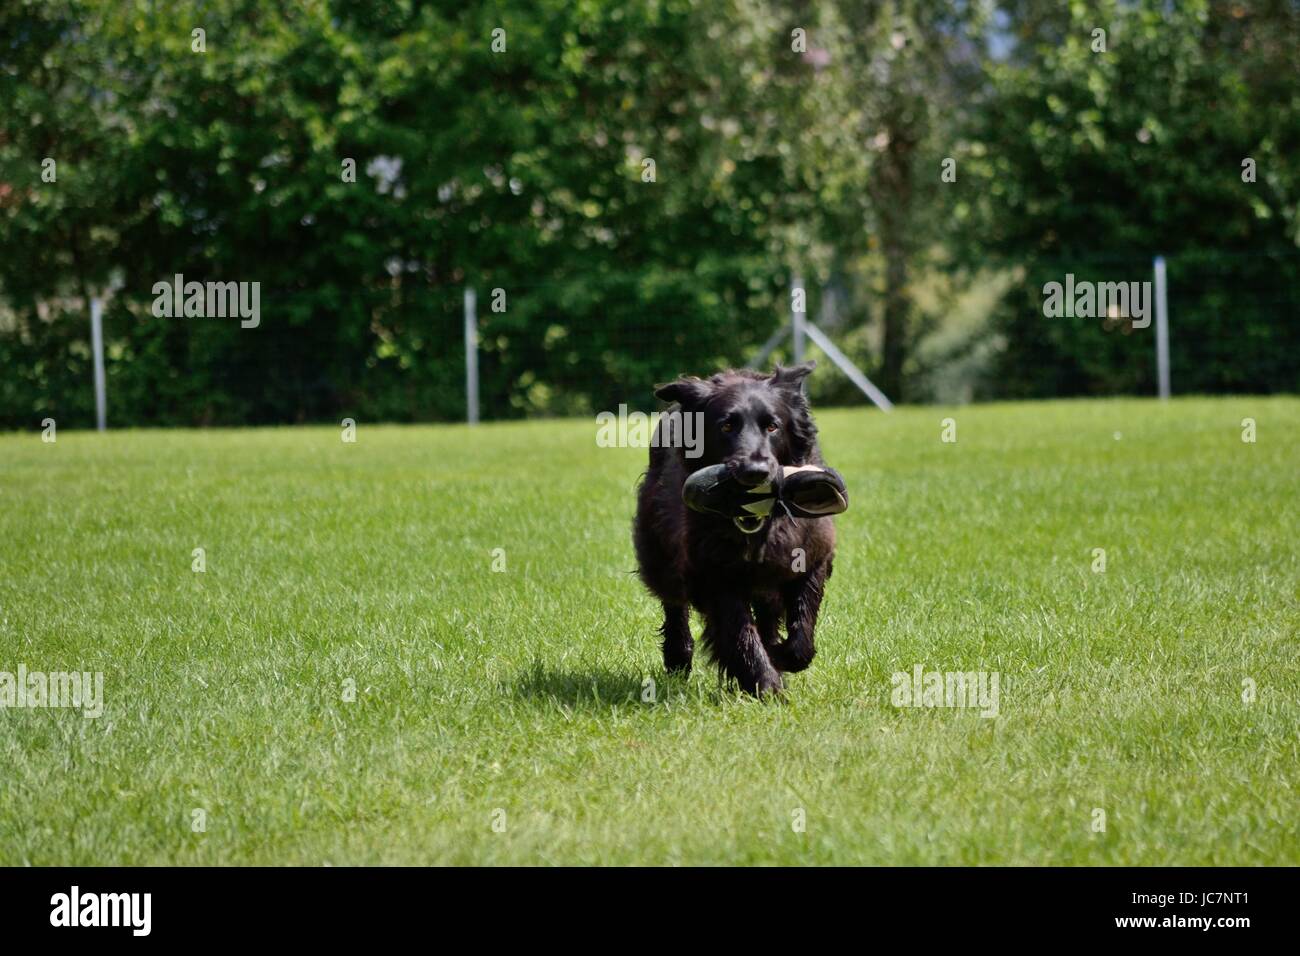 Schwarzer Hund apportiert am Trainingsplatz Turnschuh Foto Stock